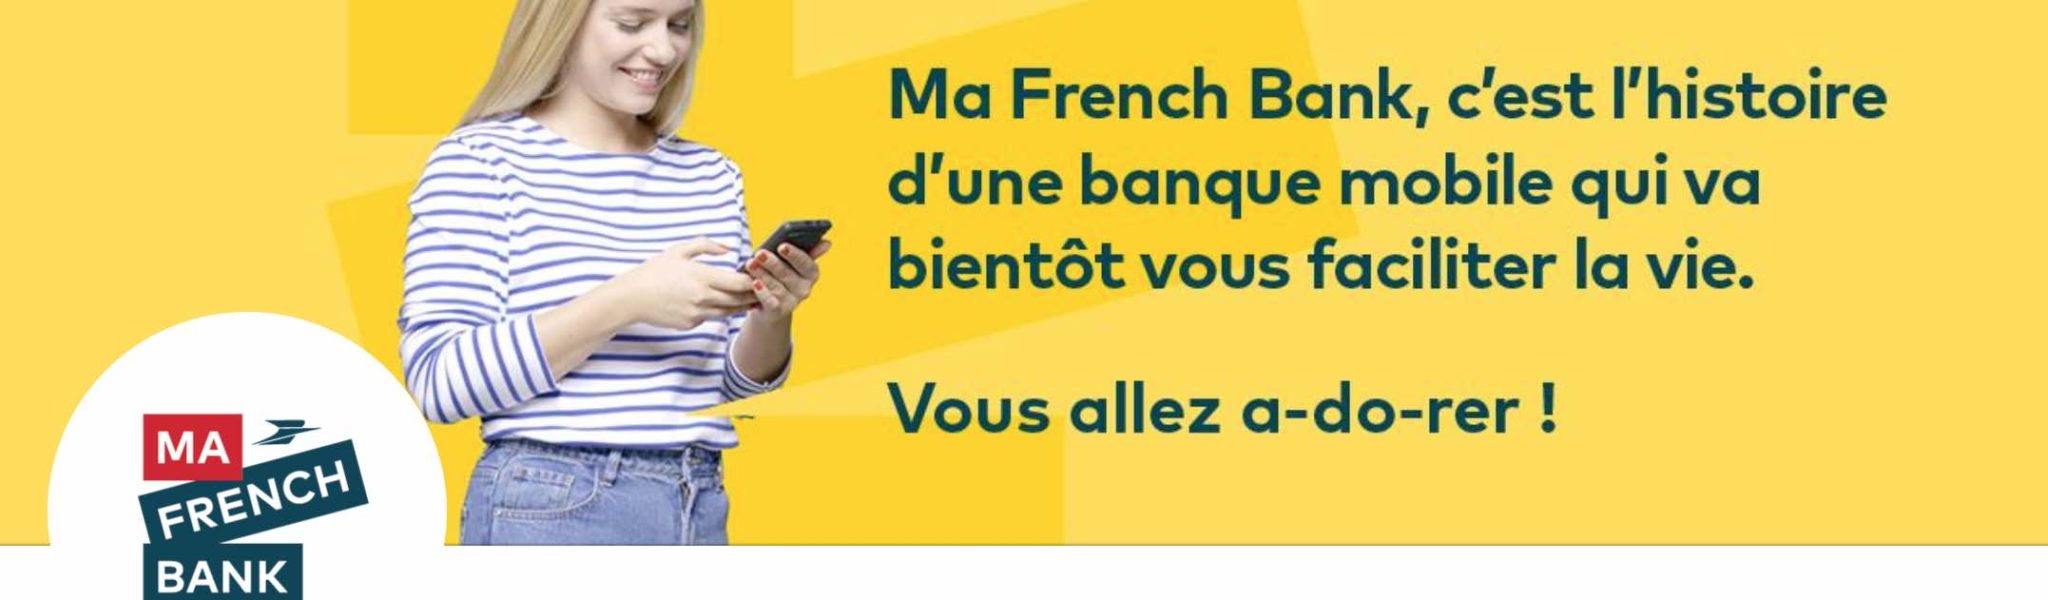 Ma French Bank compte désormais 425 000 clients